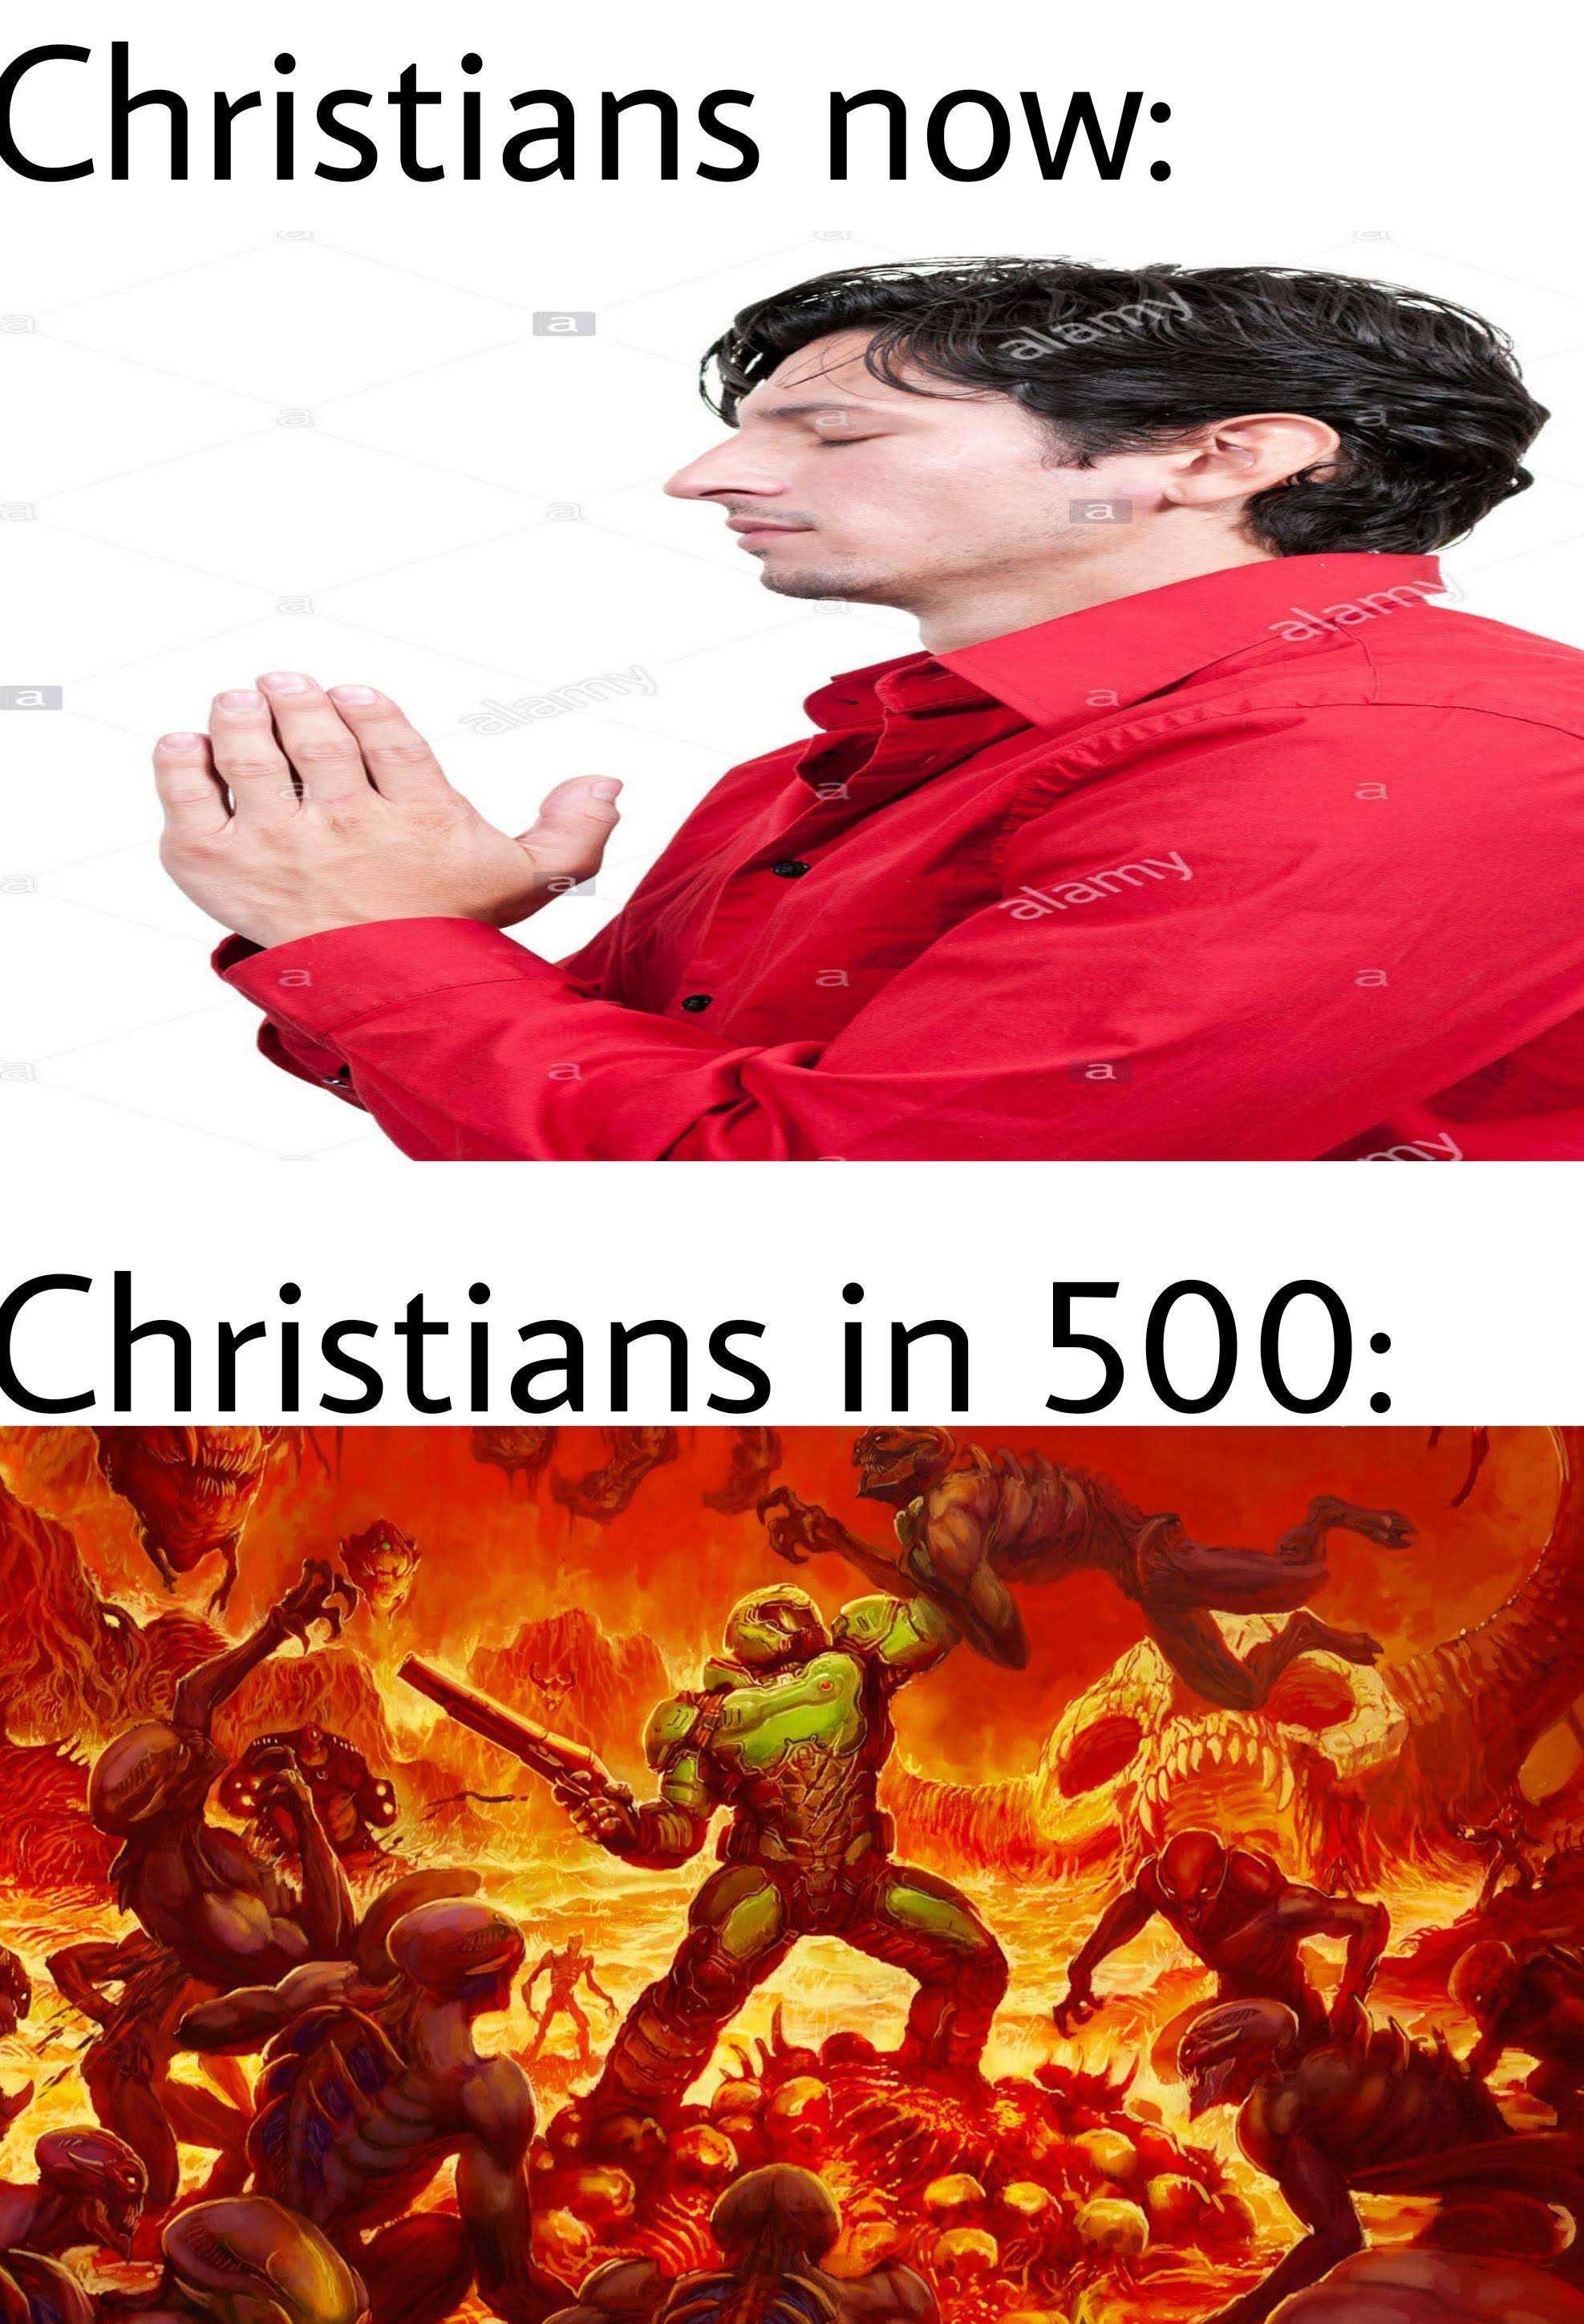 dank memes - doom 2016 art - Christians now Christians in 500